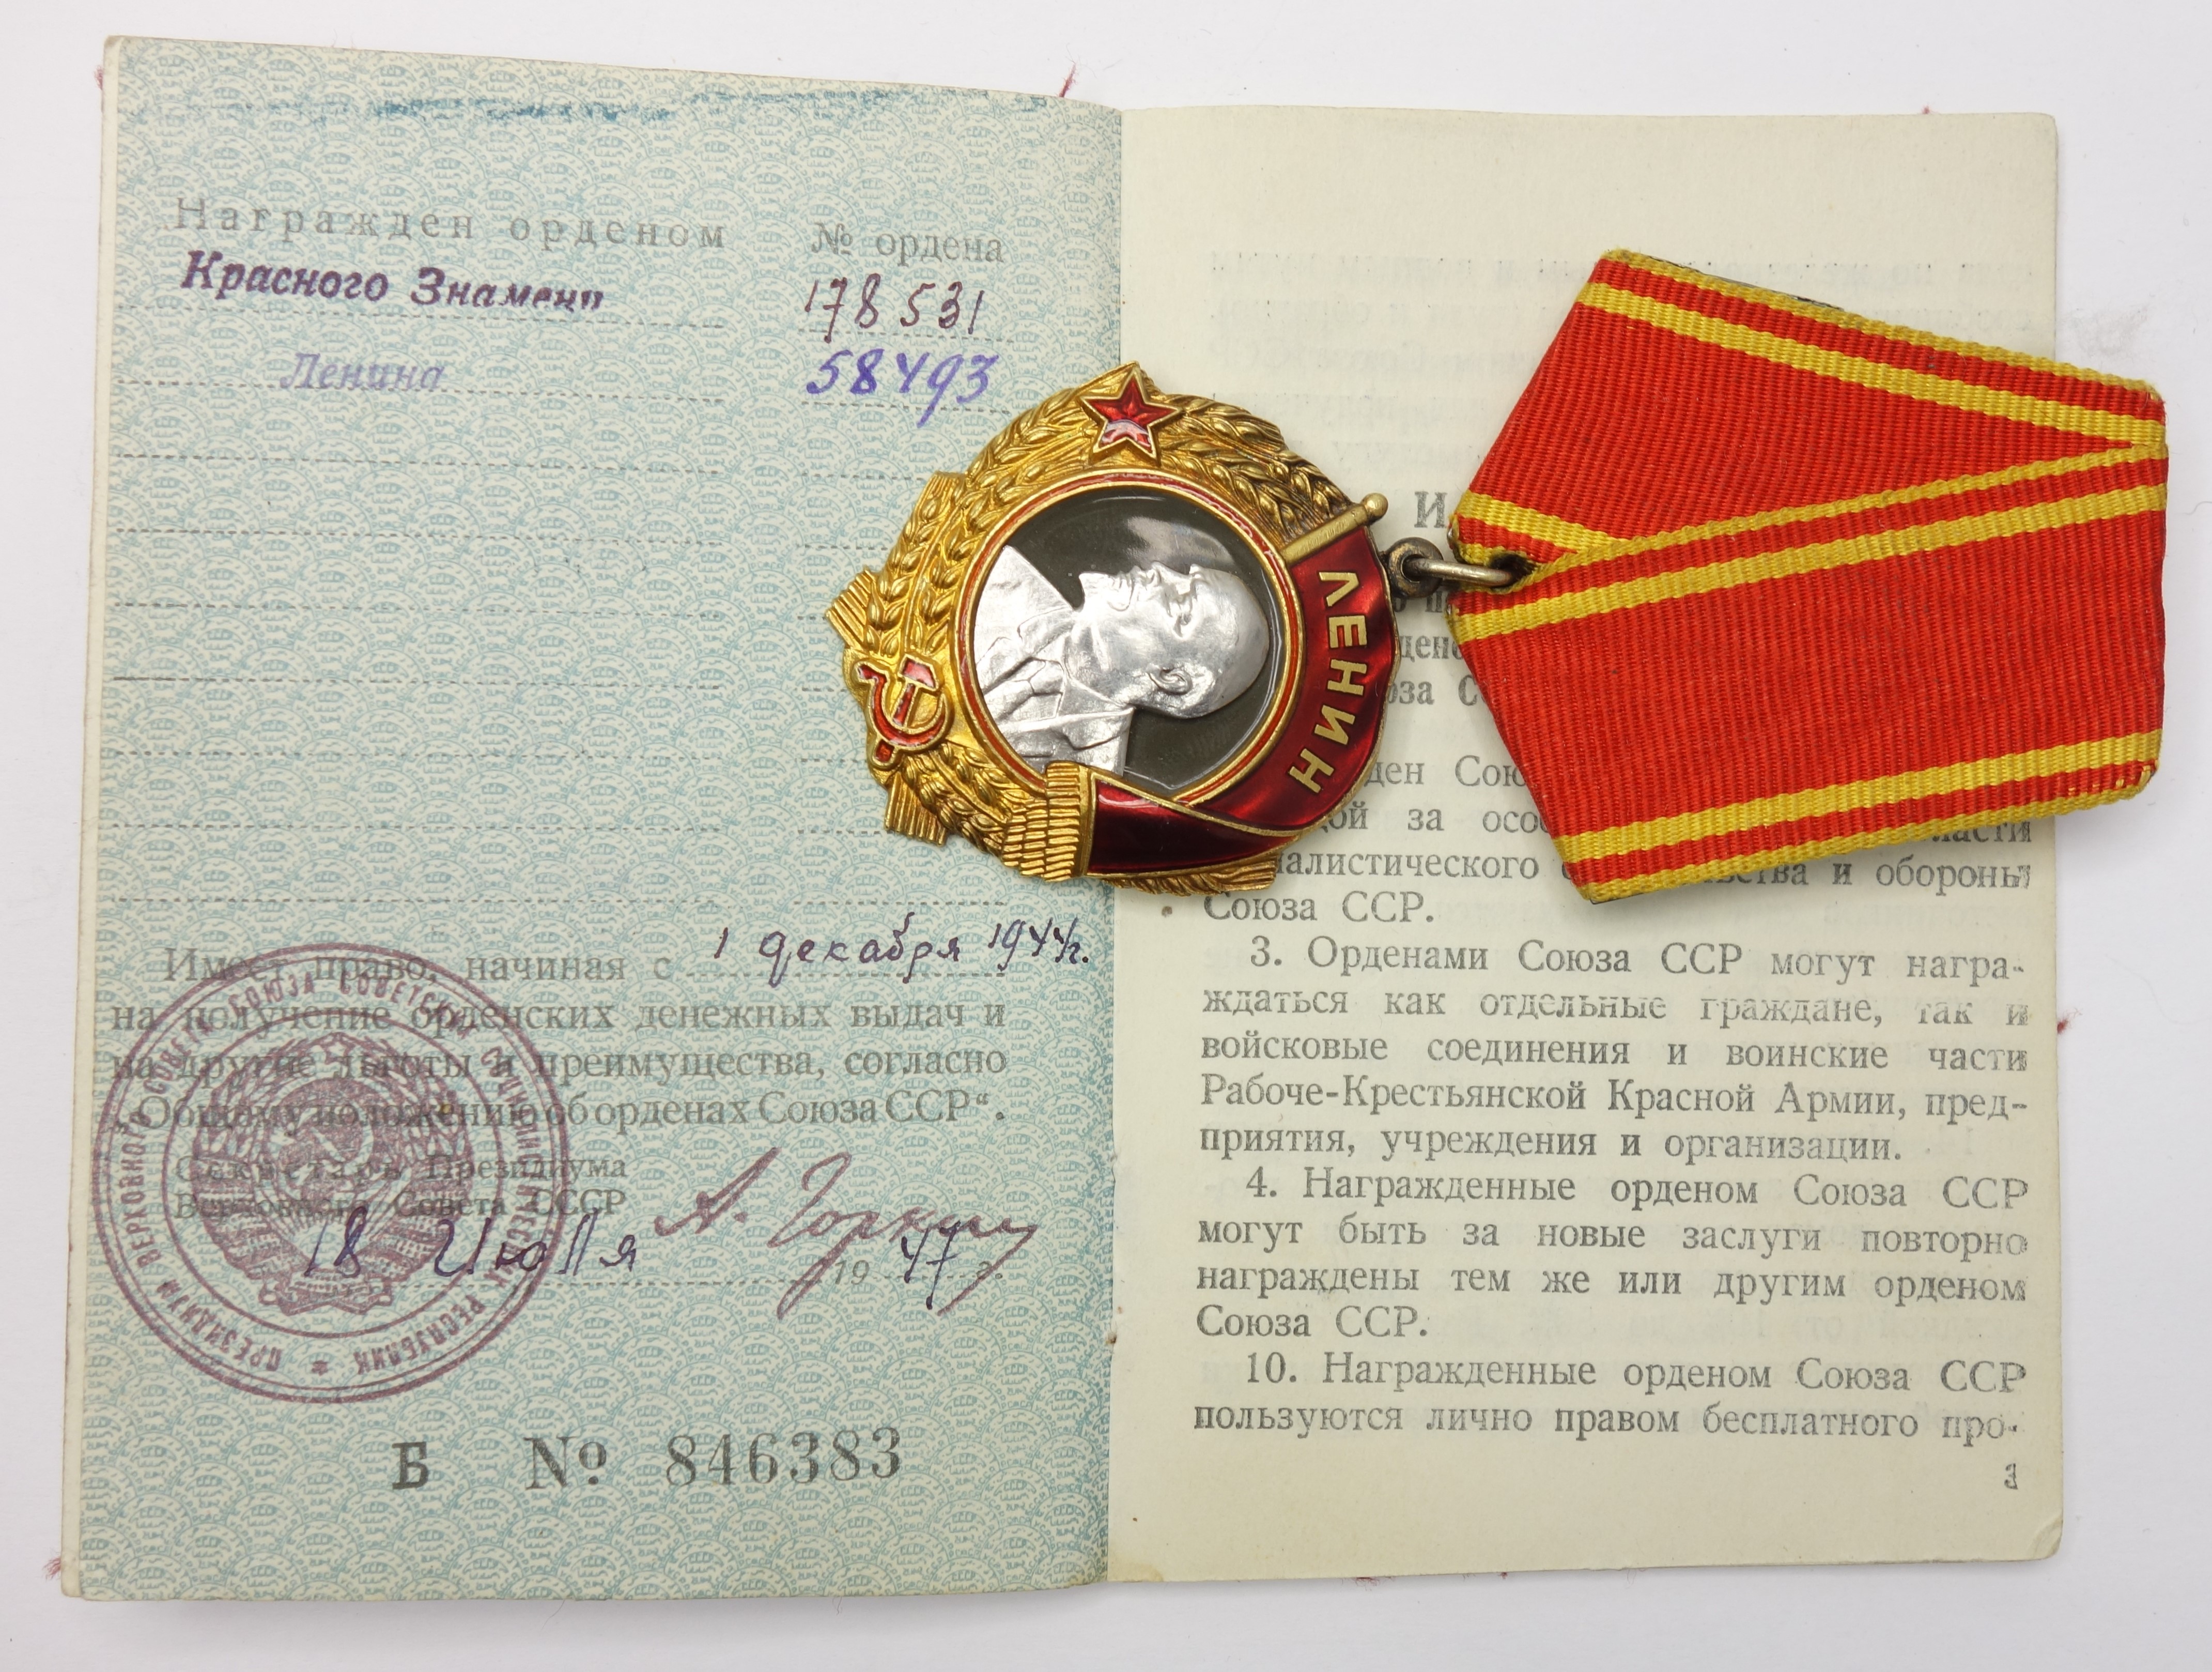 Узбекской ССР награждена орденом Ленина